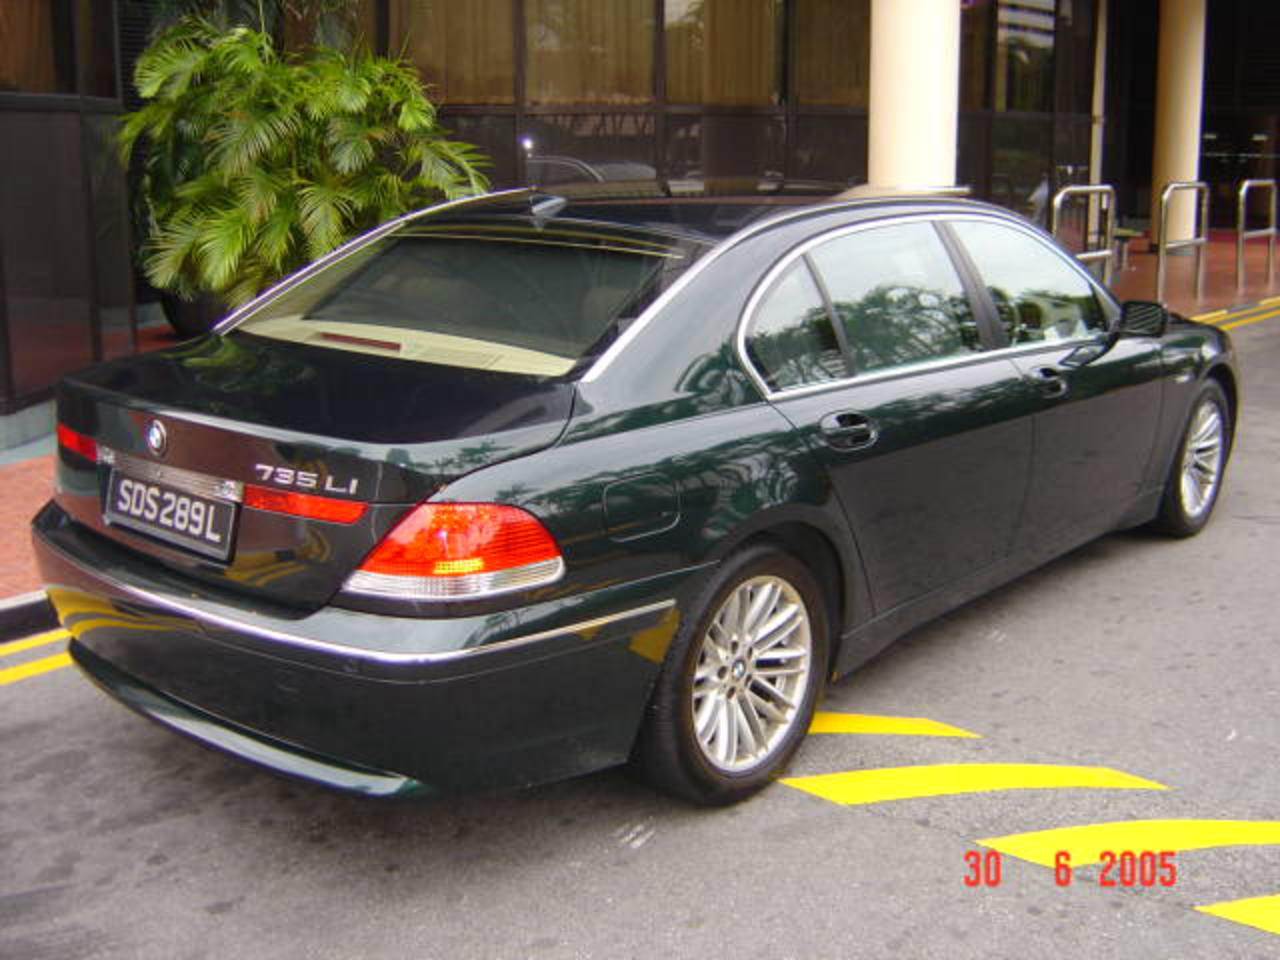 2002 BMW 735iL. Green